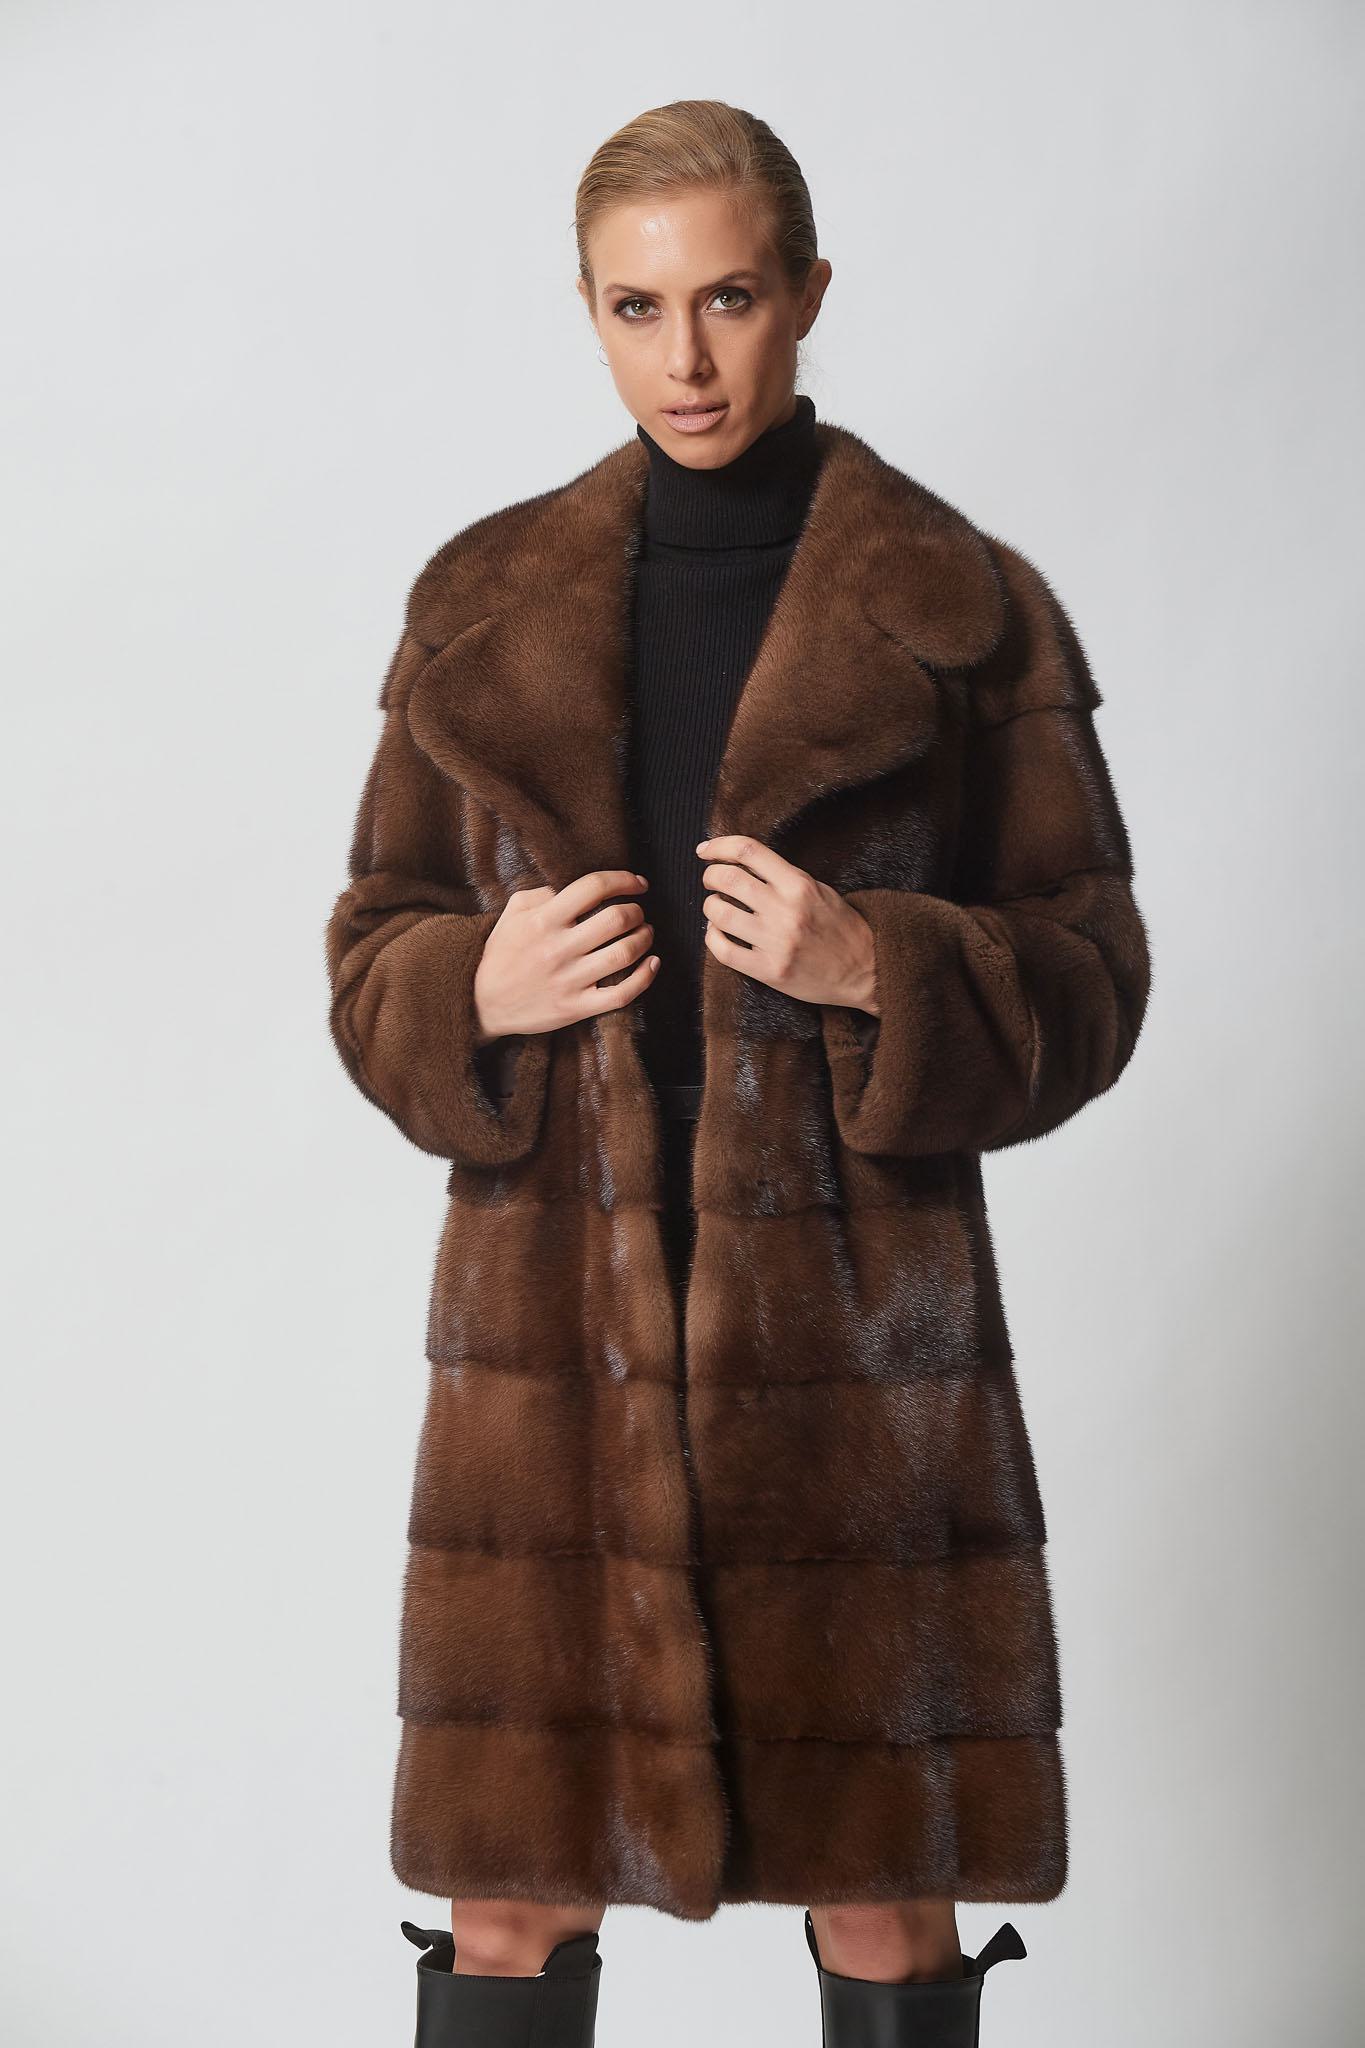 Men's Fur Coats - Shopifur